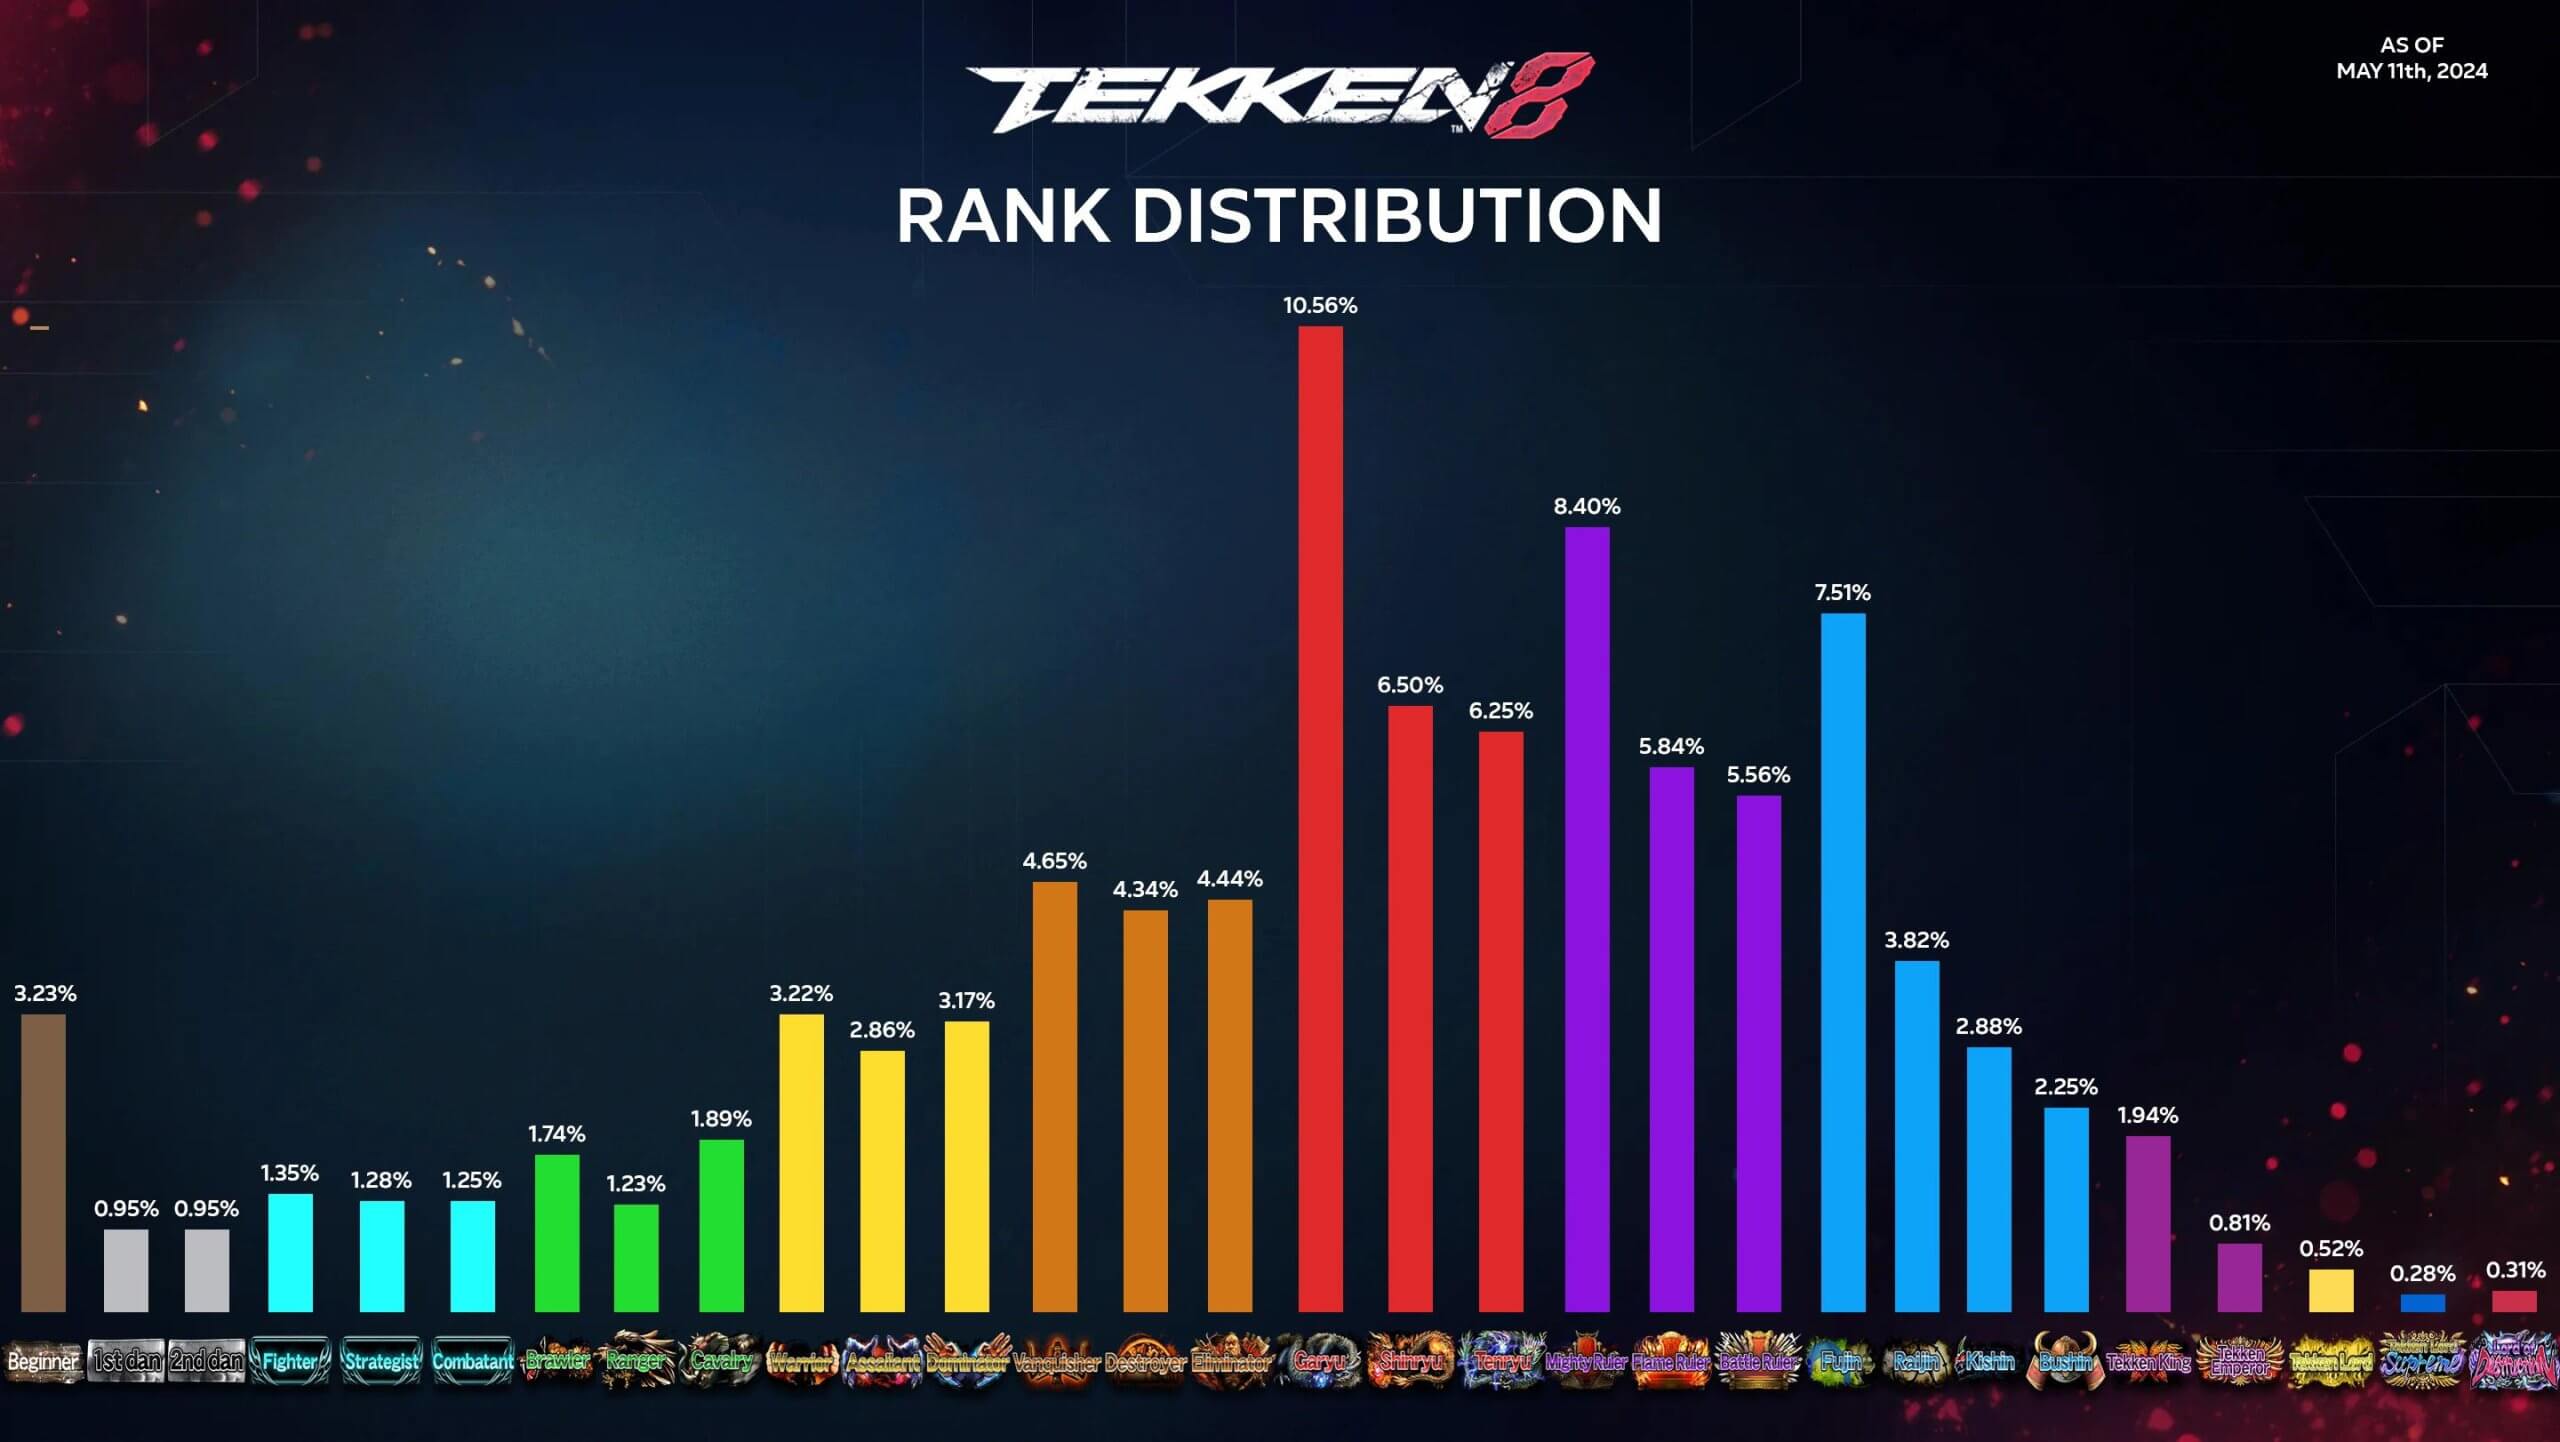 ПК, похоже, самая популярная платформа для Tekken 8